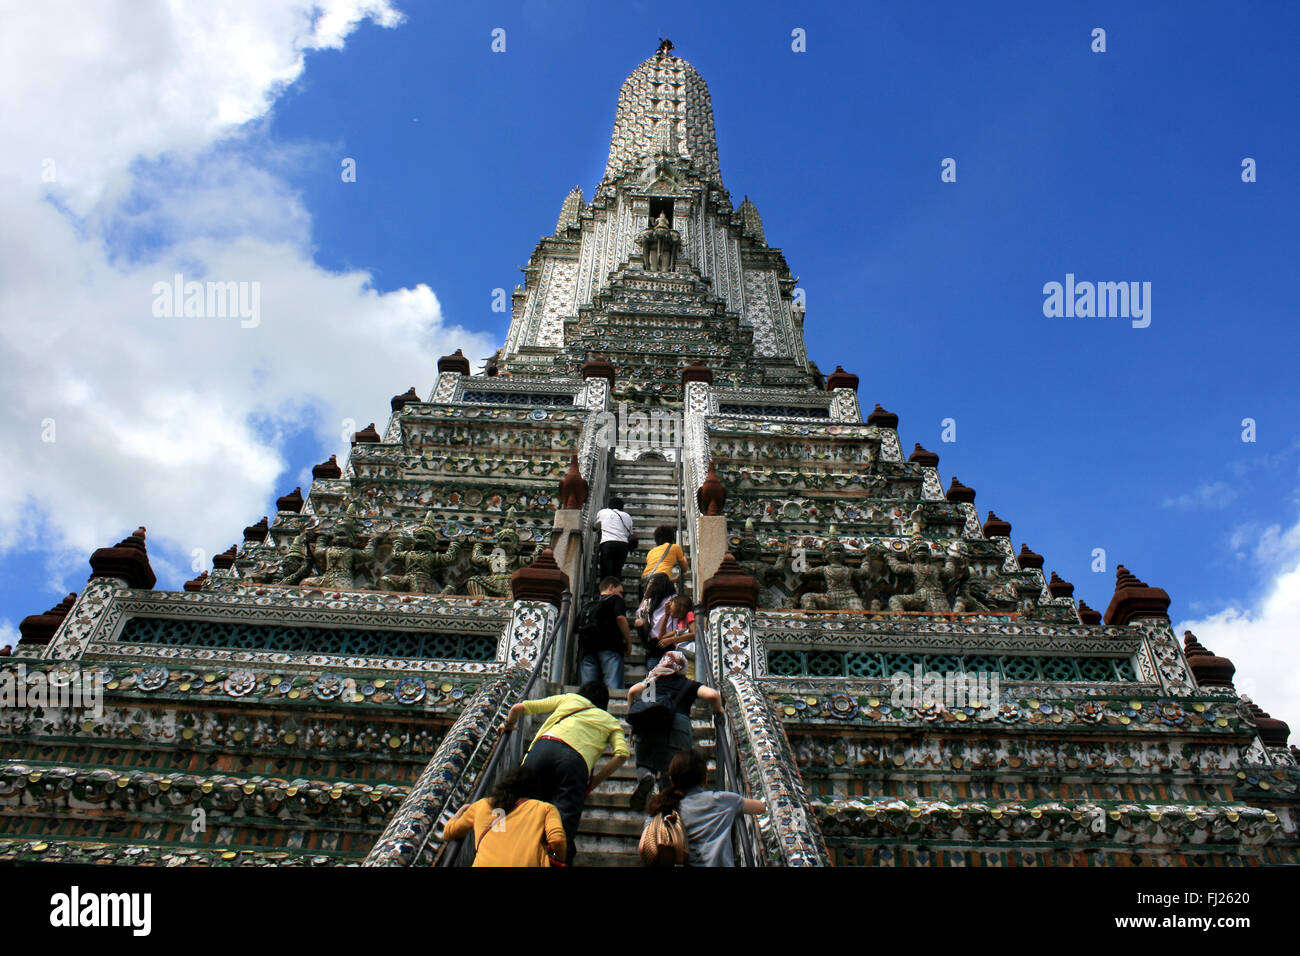 Wat Arun temple / buddhist pagoda in Bangkok  Thailand Stock Photo